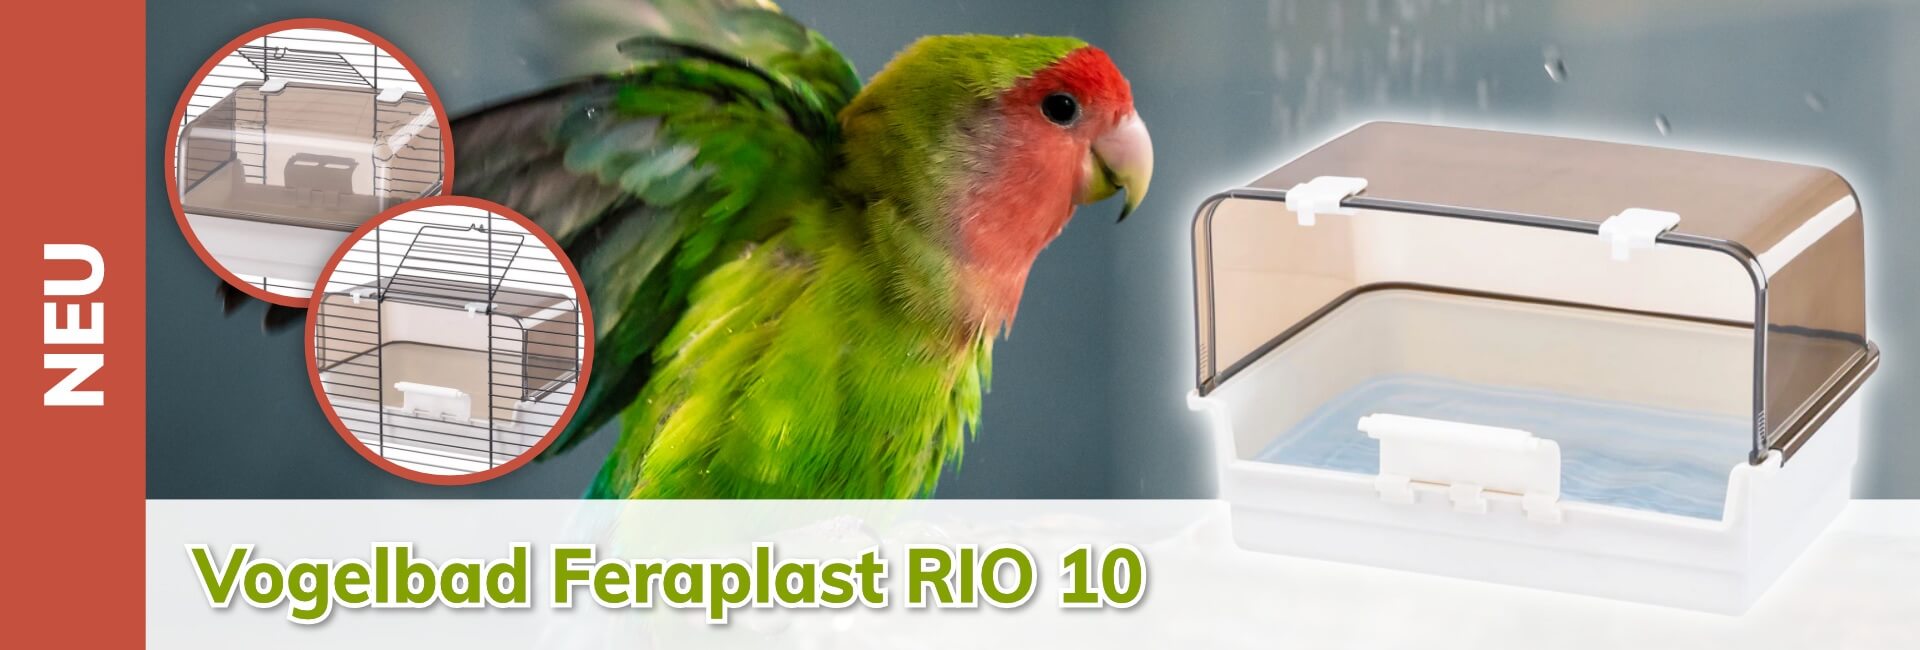 Vogelbad Feraplast RIO 10